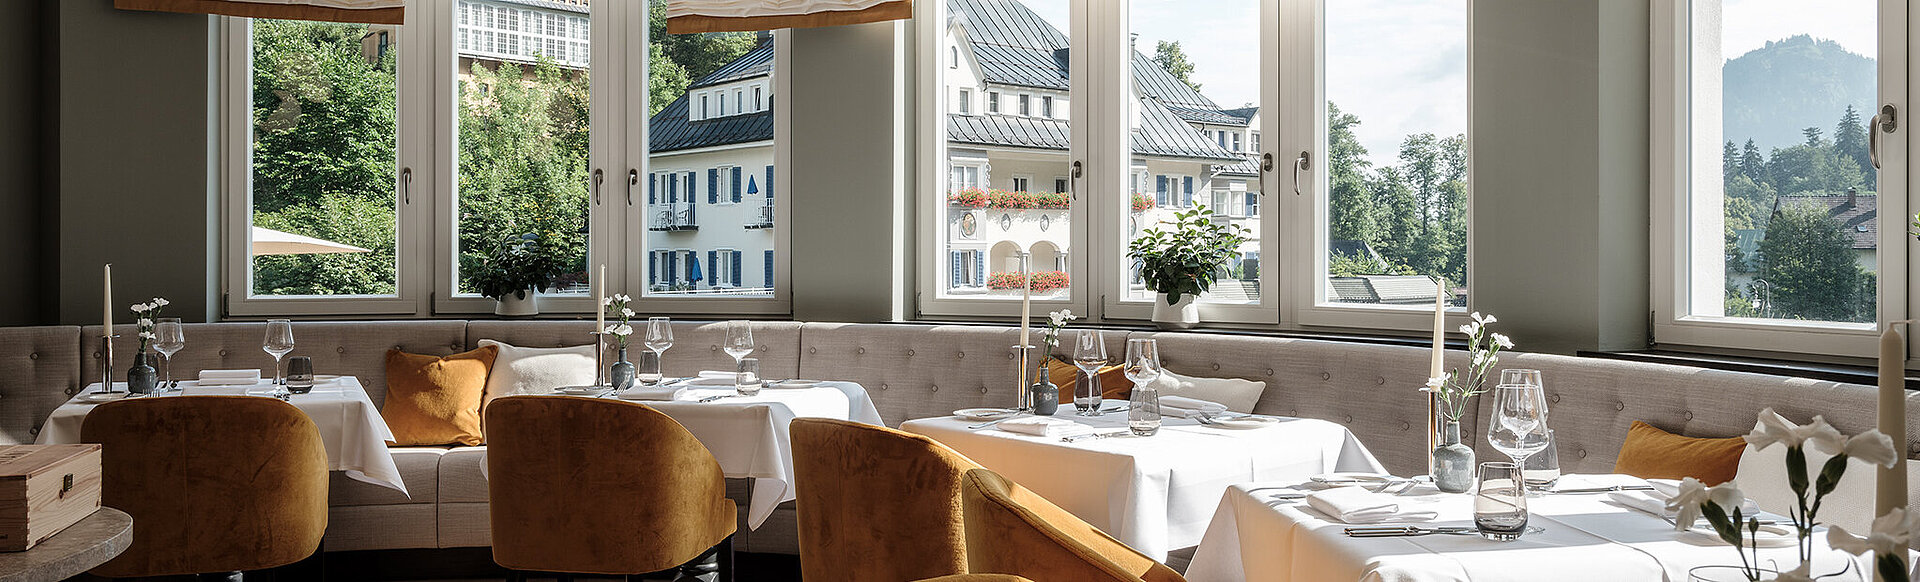 AMERON Neuschwanstein Alpsee Resort & Spa Restaurant Lisl gedeckte tische